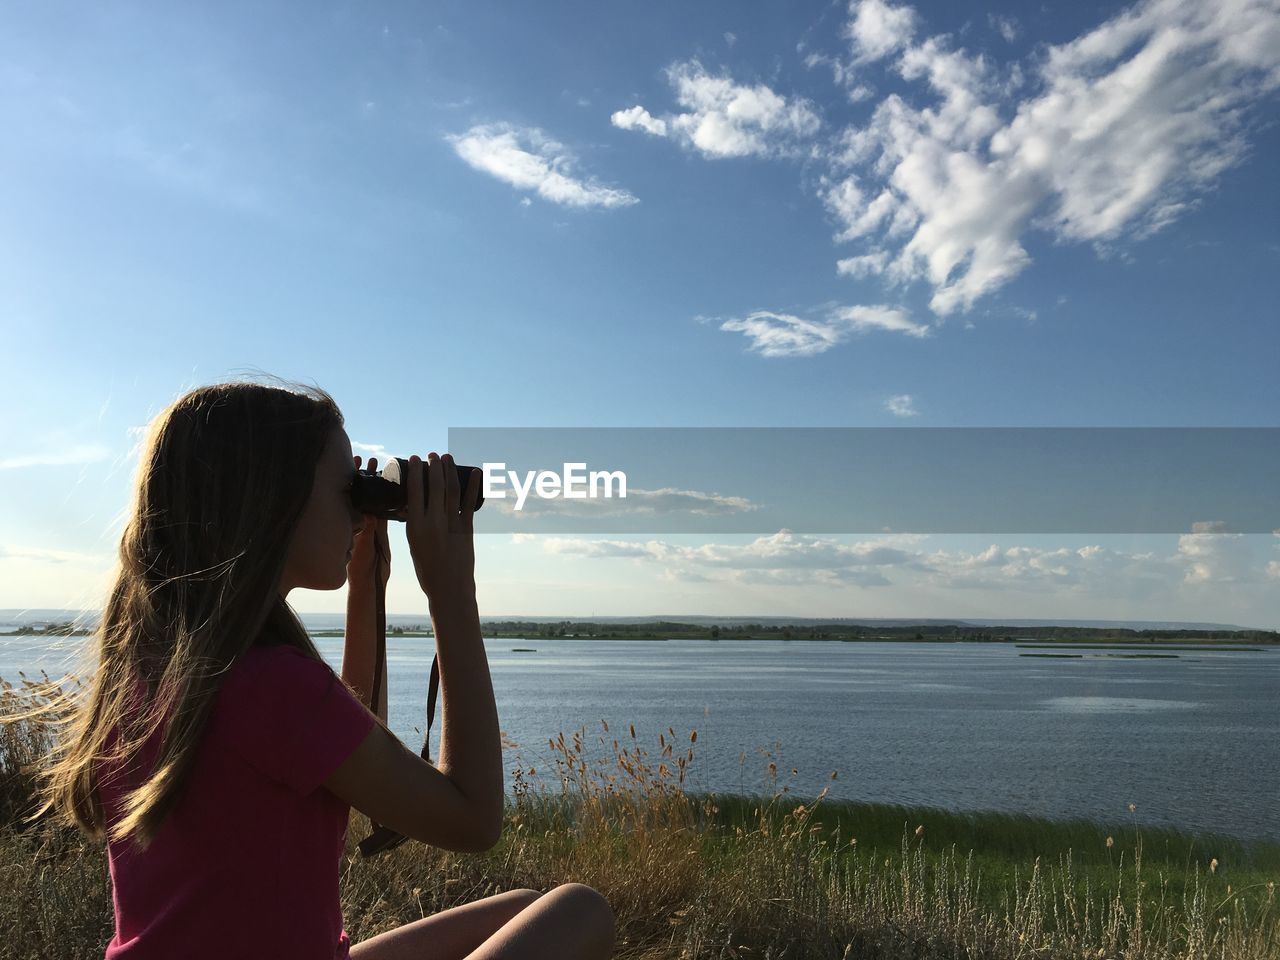 Woman looking at sea through binoculars against blue sky